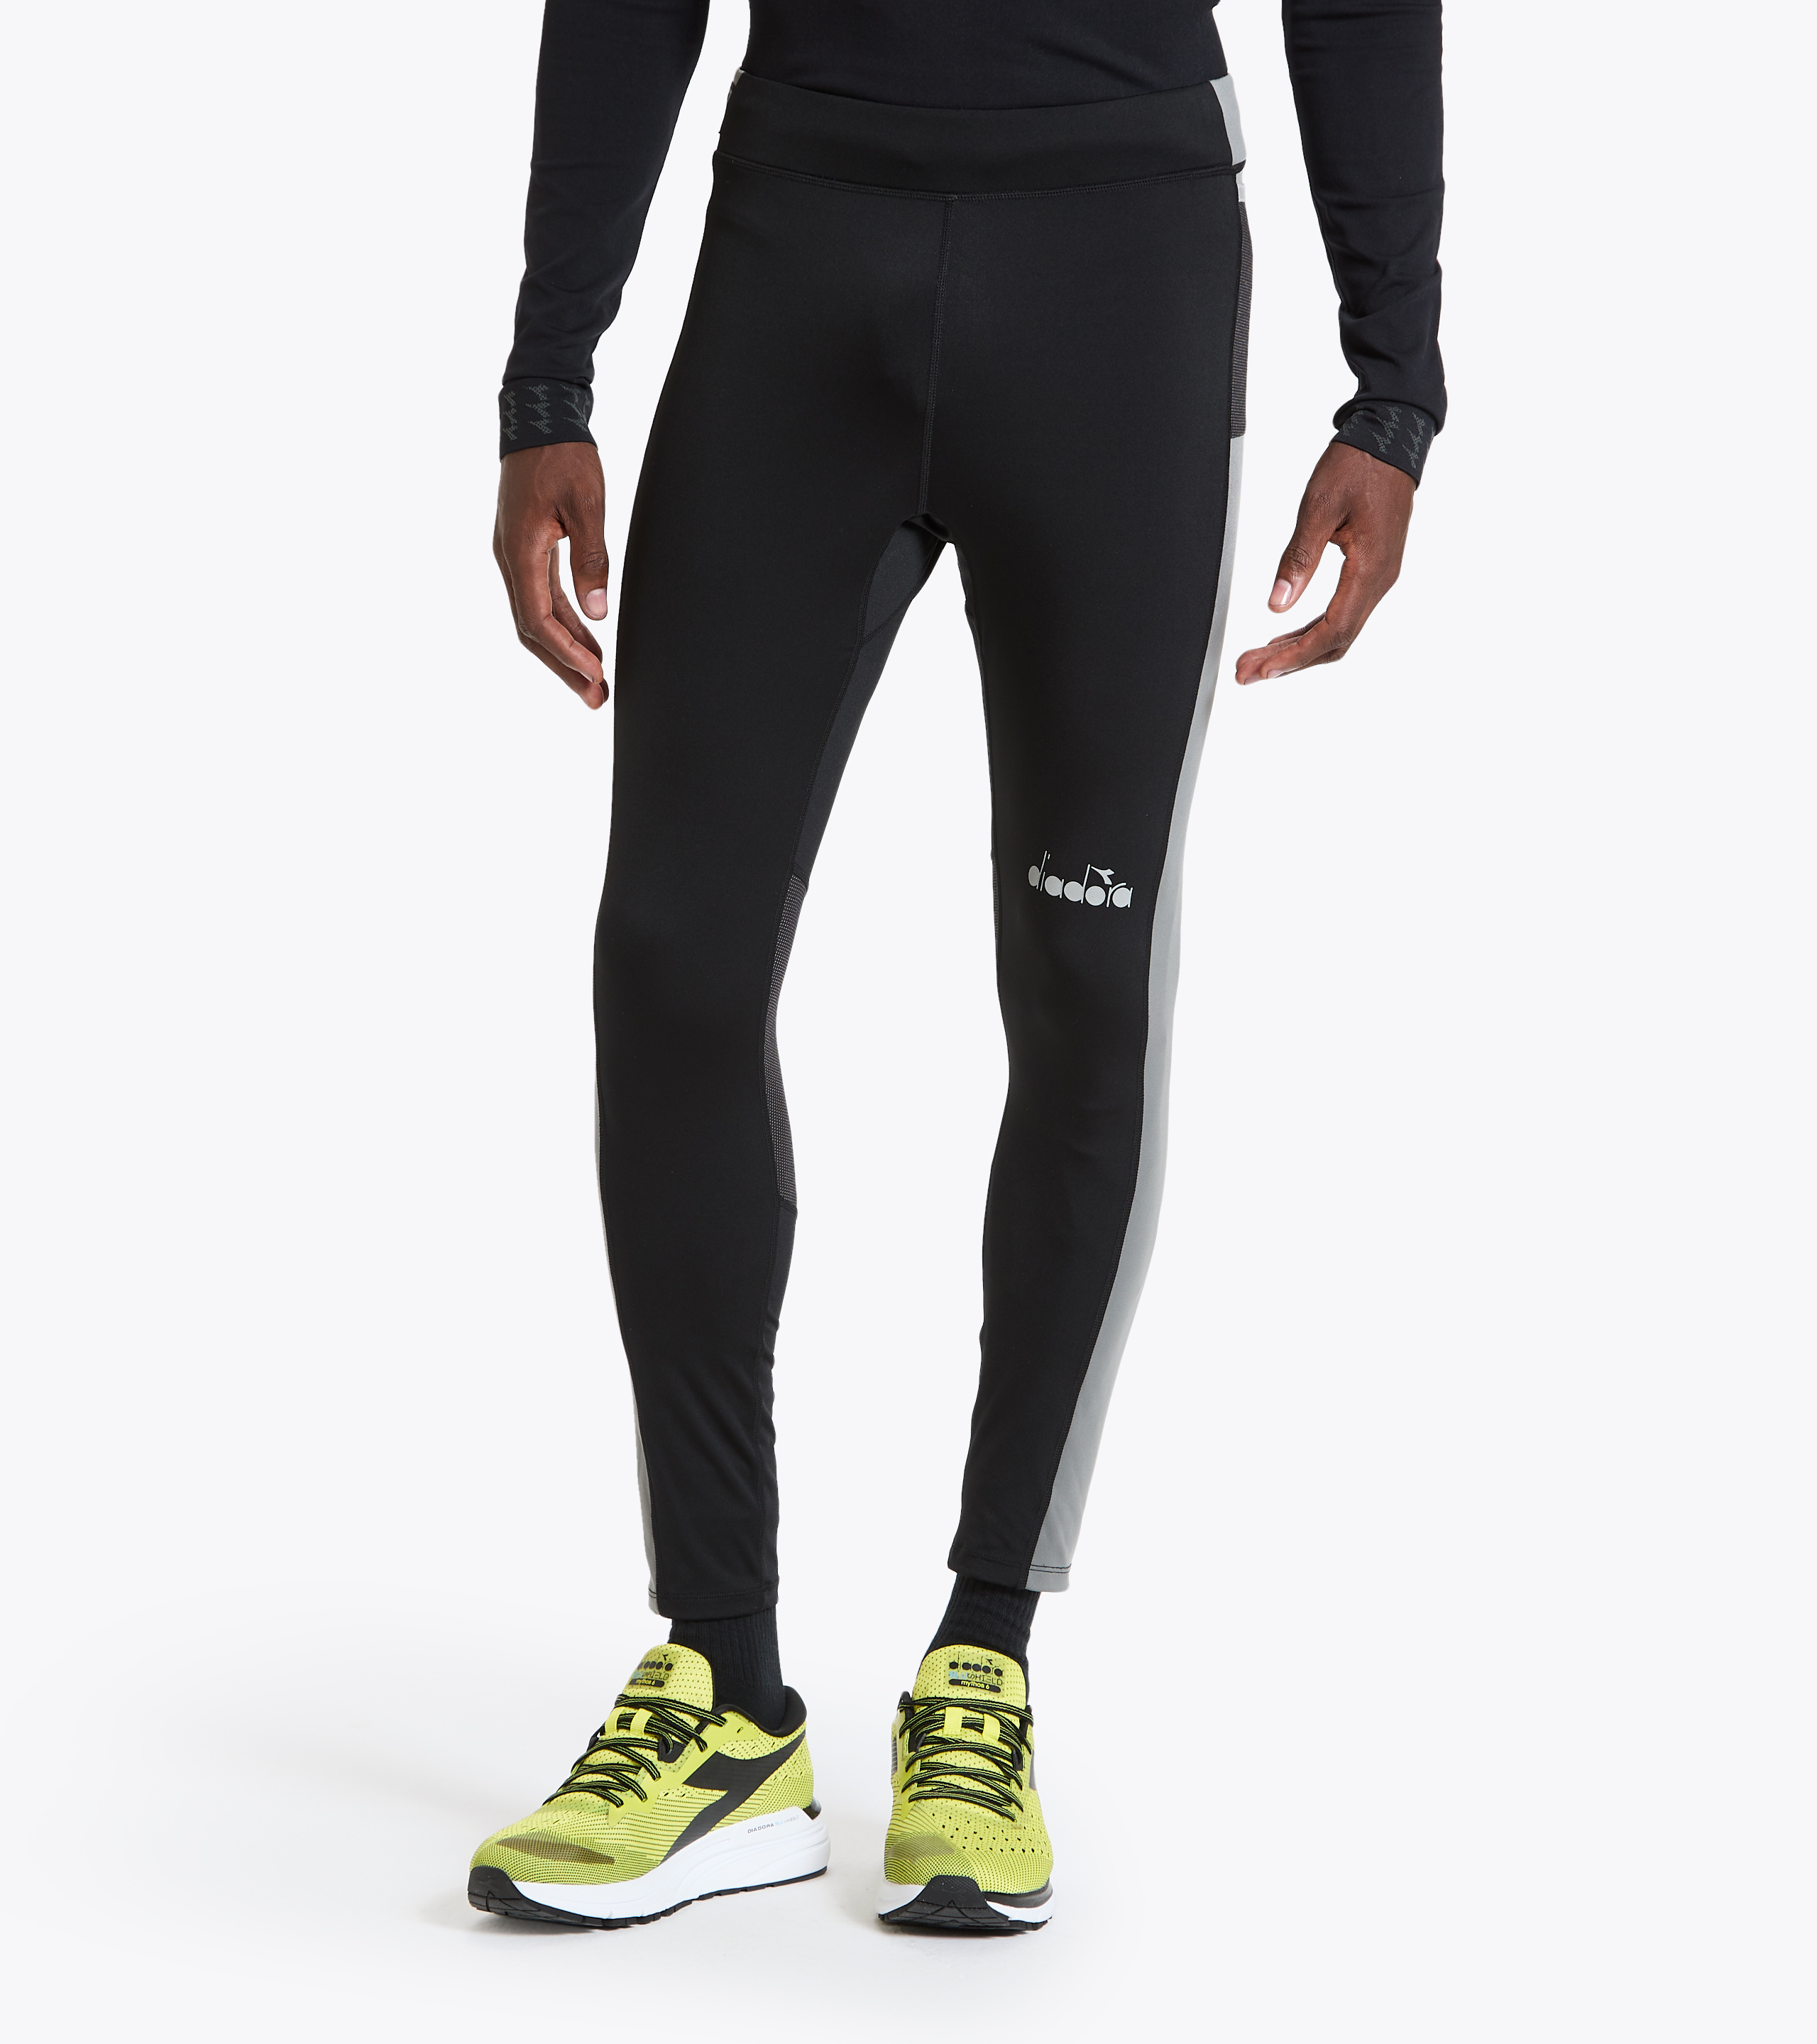 Ongeldig angst Afhankelijkheid RUNNING TIGHTS Running leggings - Men - Diadora Online Store US